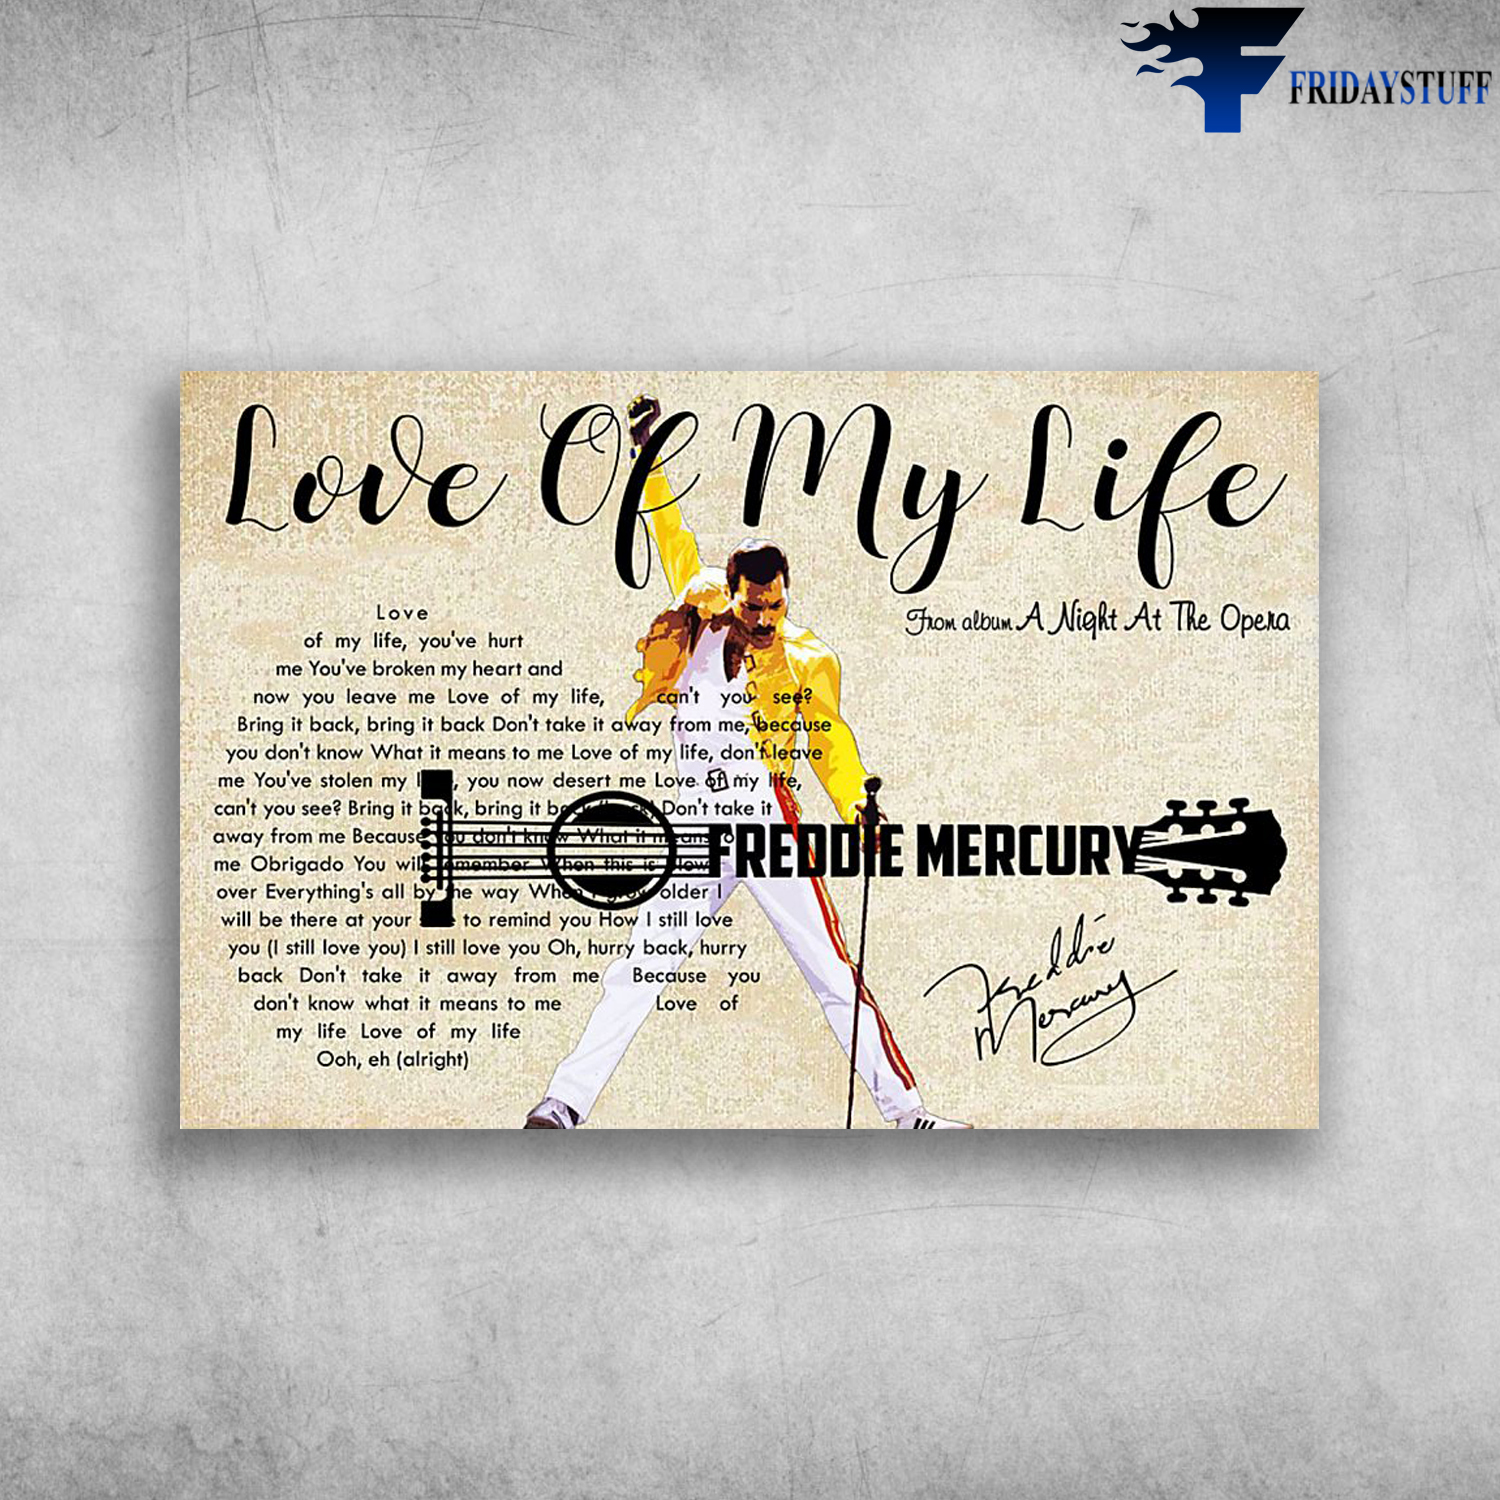 Love of My Life (Queen) by Freddie Mercury